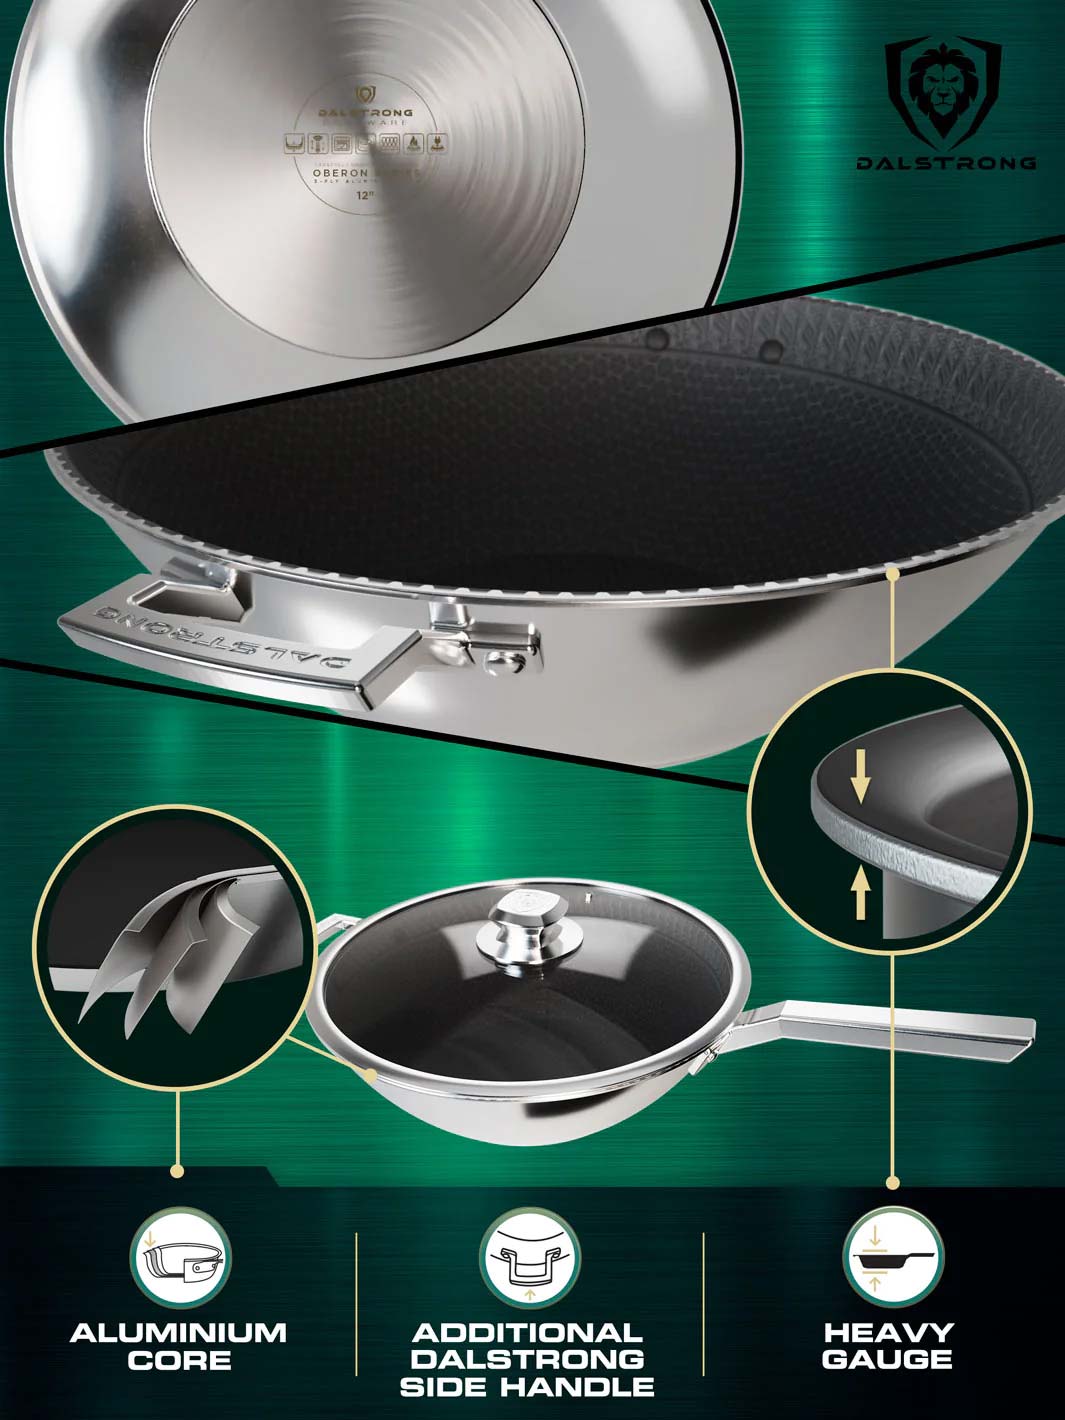 12" Frying Pan Wok | ETERNA Non-stick | Oberon Series | Dalstrong ©